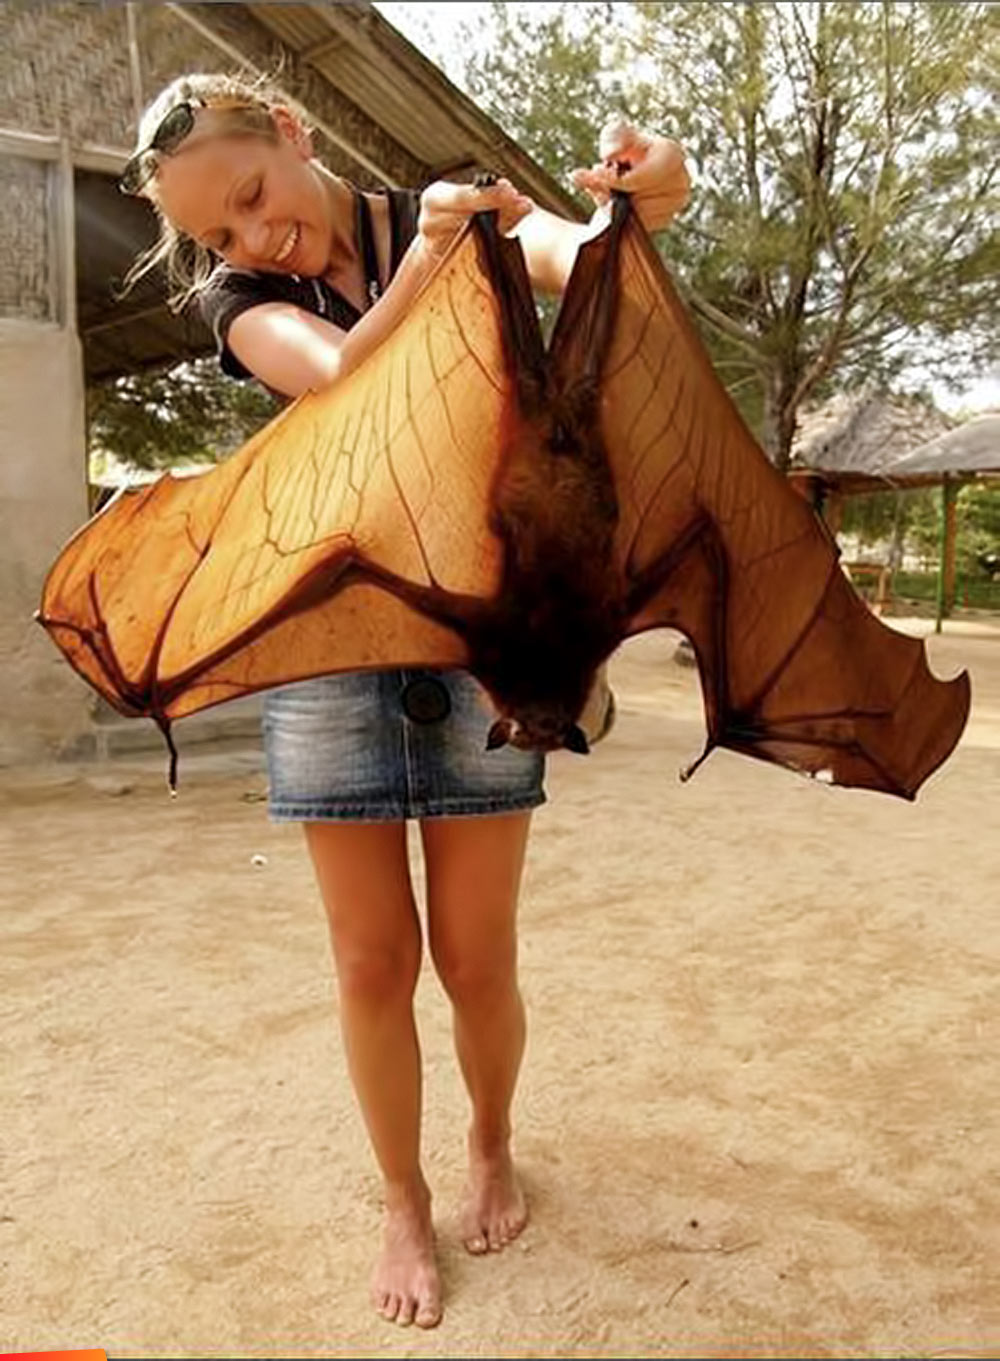 BIG o' Bat in Belize